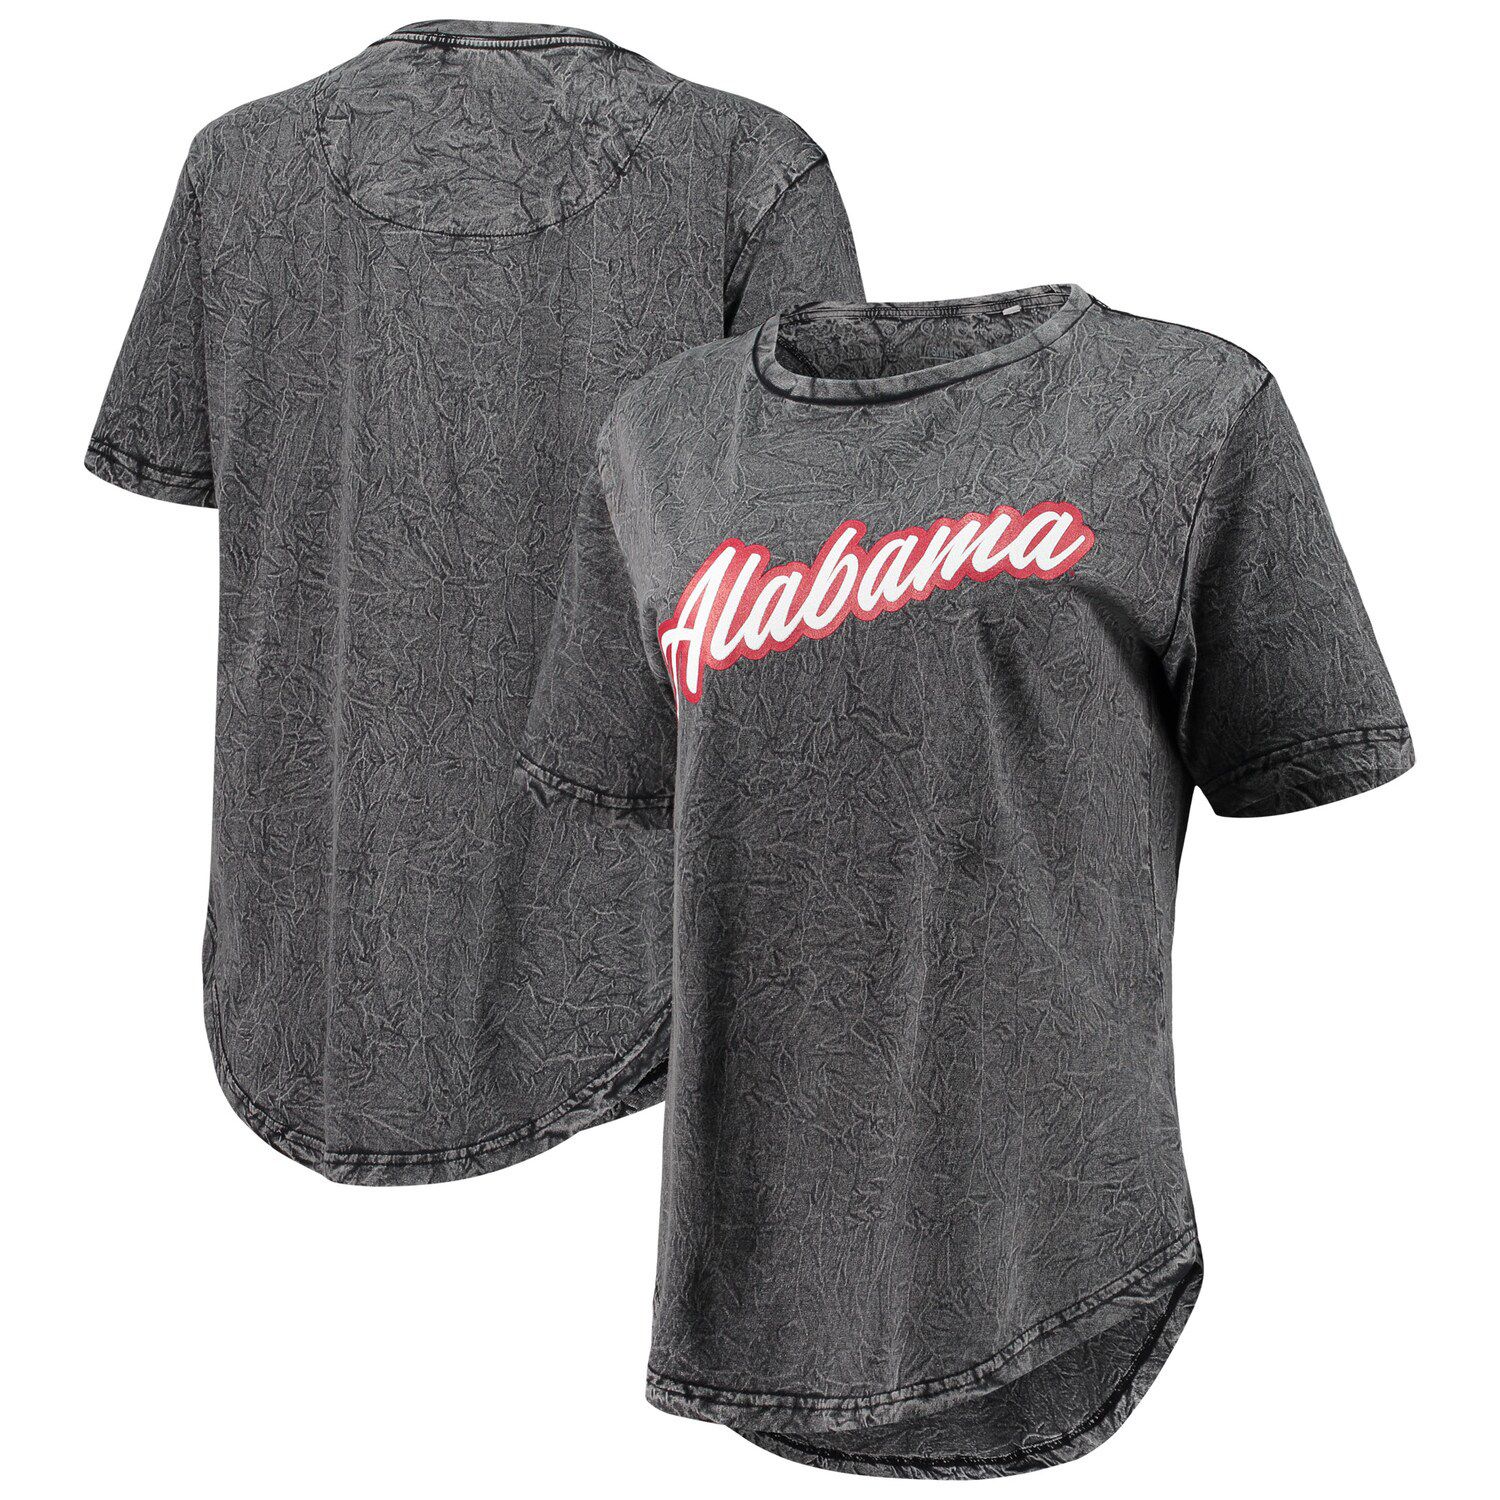 Image for Unbranded Women's Pressbox Black Alabama Crimson Tide Shortstop Mineral Wash T-Shirt at Kohl's.